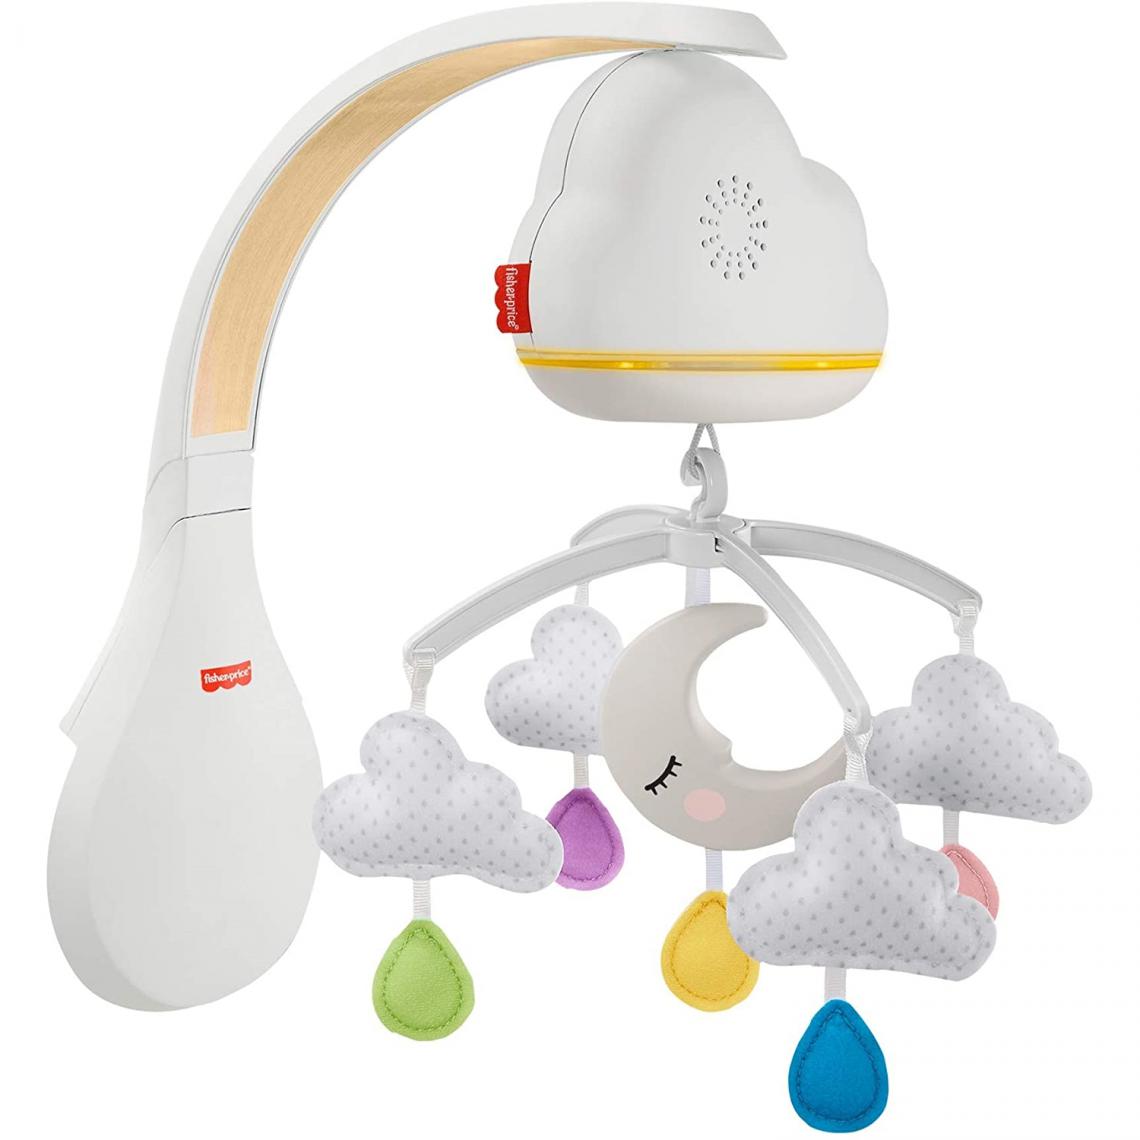 Mattel - Mattel GRP99 - Fisher-Price Nuages Apaisants mobilé musical pour lit bébé avec détecteur de pleurs, sons et lumières, transformable en veilleuse - Jeux éducatifs